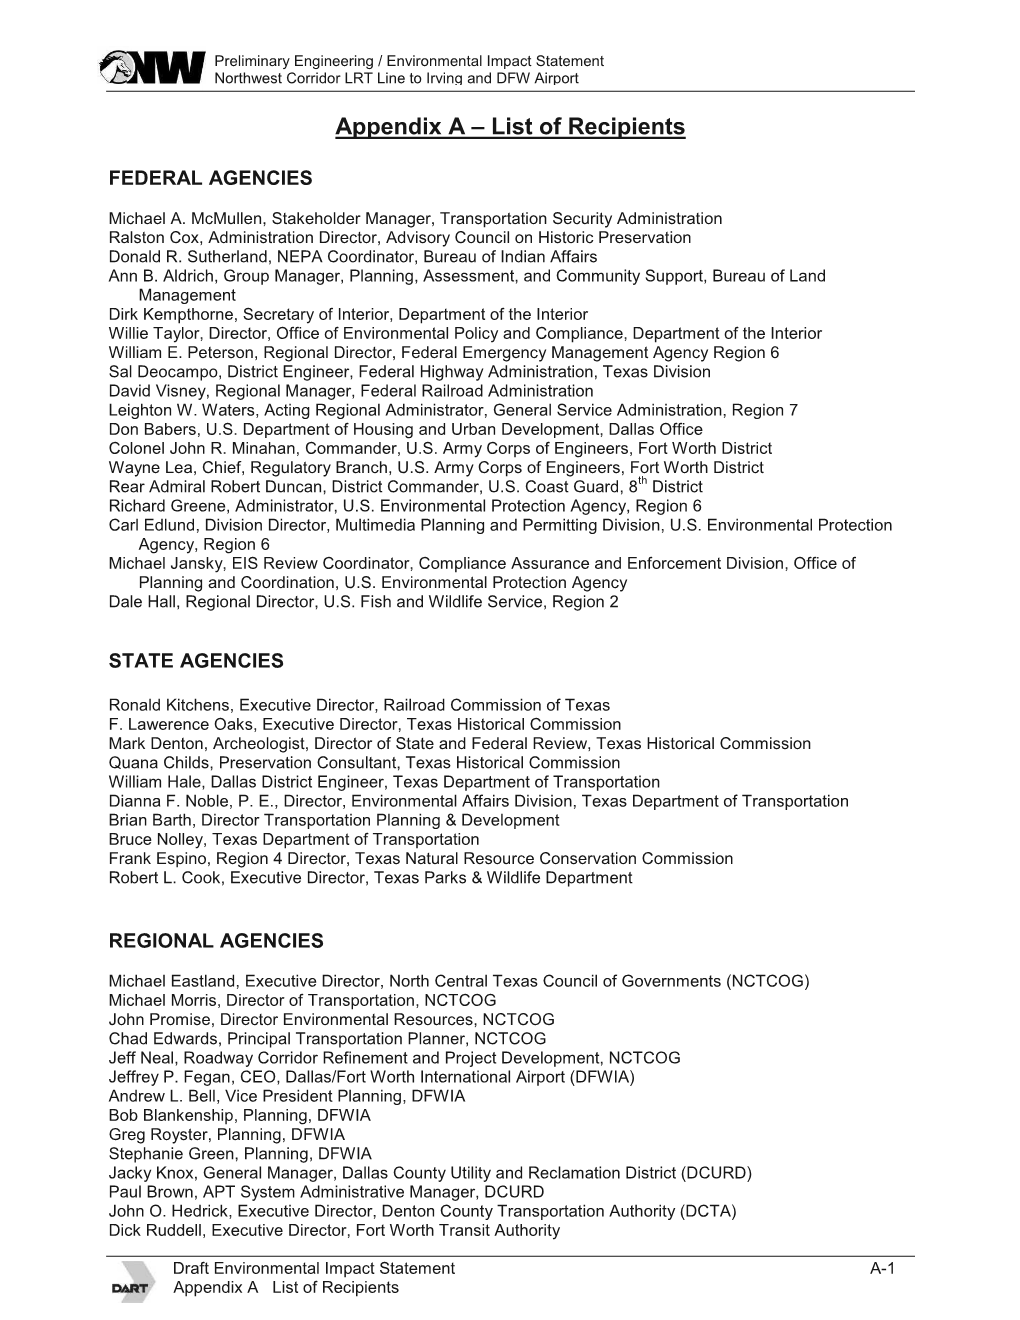 Appendix a – List of Recipients